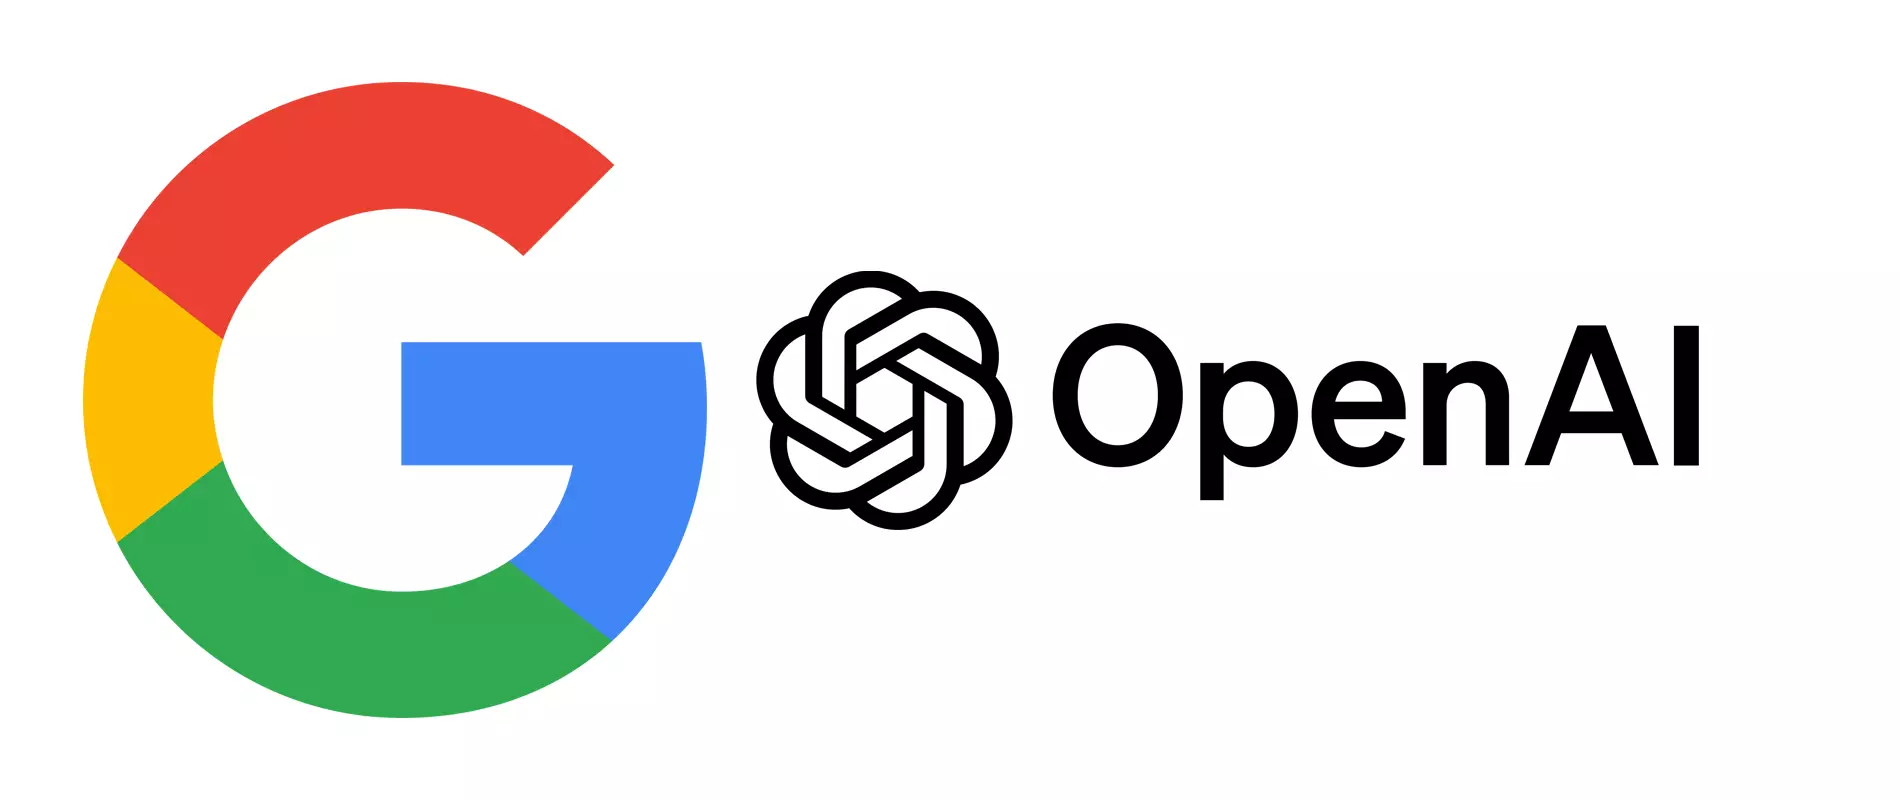 Google et OpenAI s'affrontent pour remodeler l'internet avec une recherche alimentée par l'IA